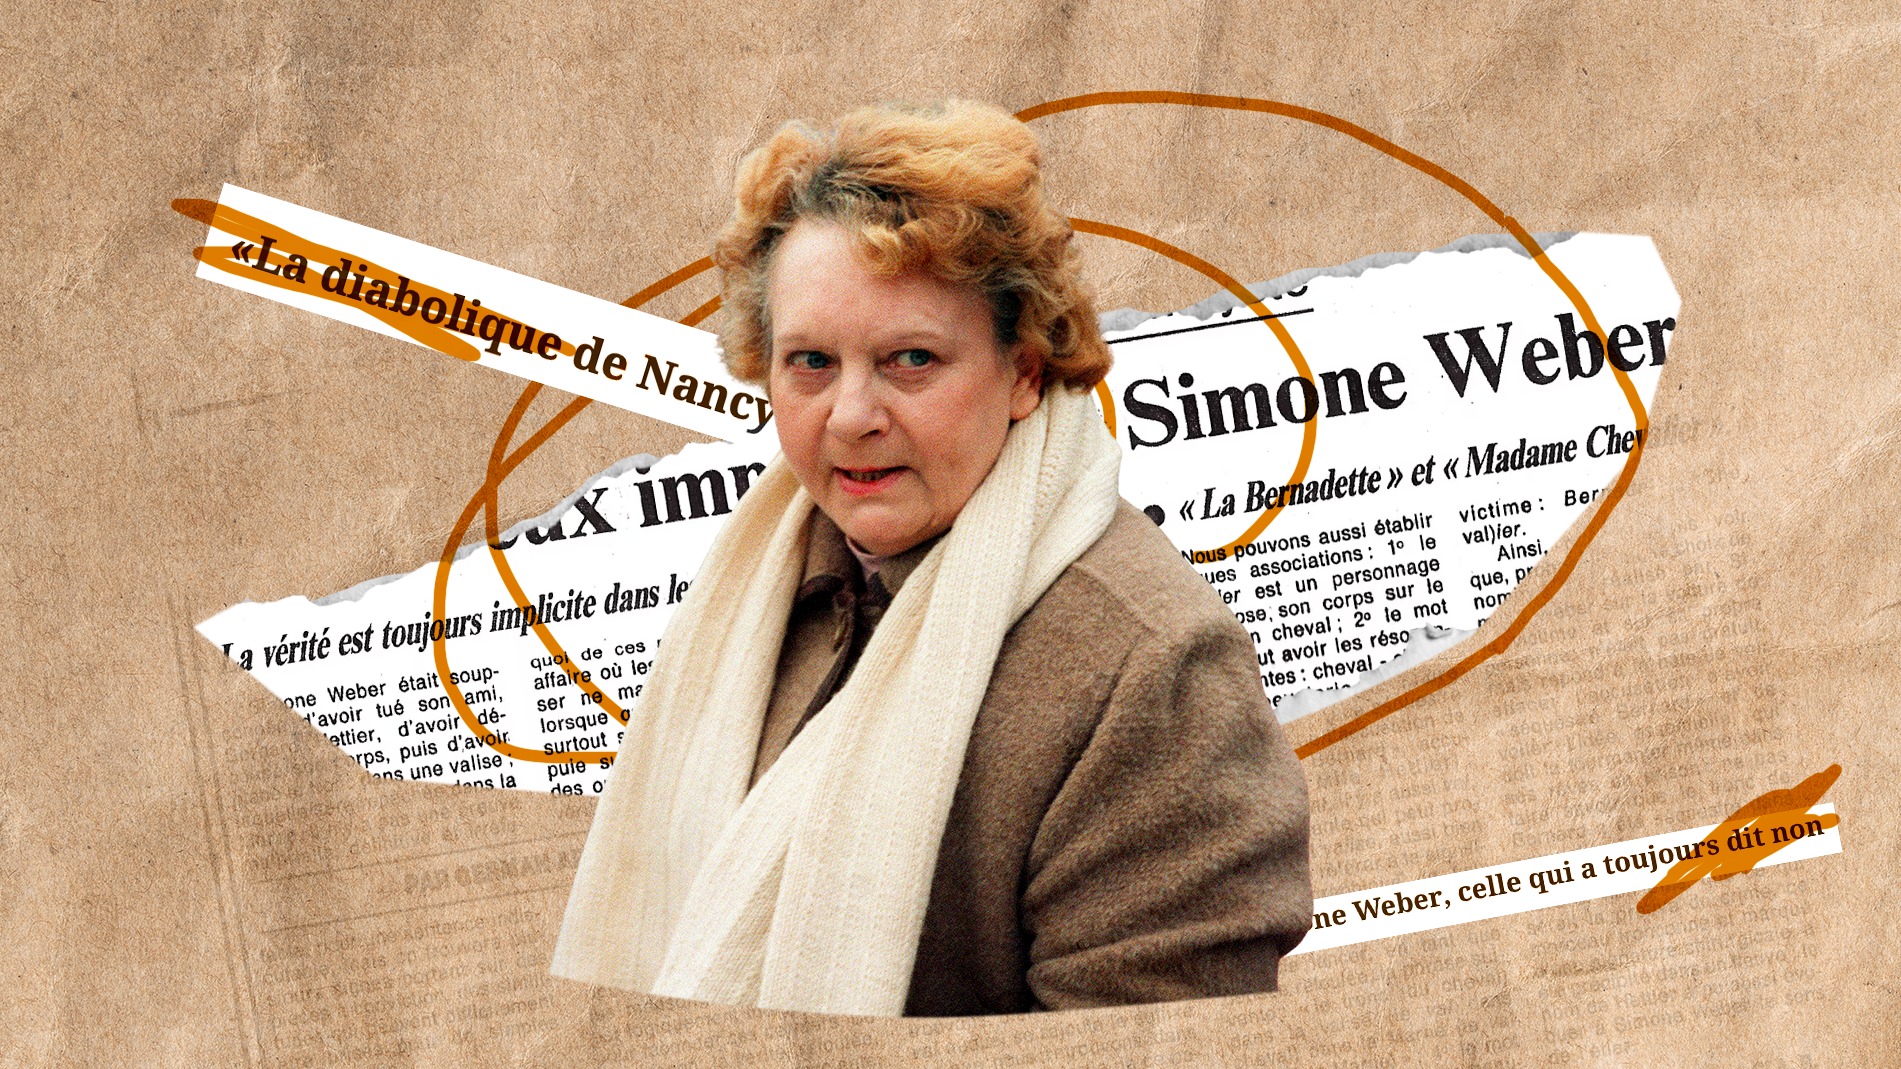 Meuleuse à béton, langage codé et corps dans la valise: Simone Weber, la diabolique de Nancy qui n’a jamais rien avoué